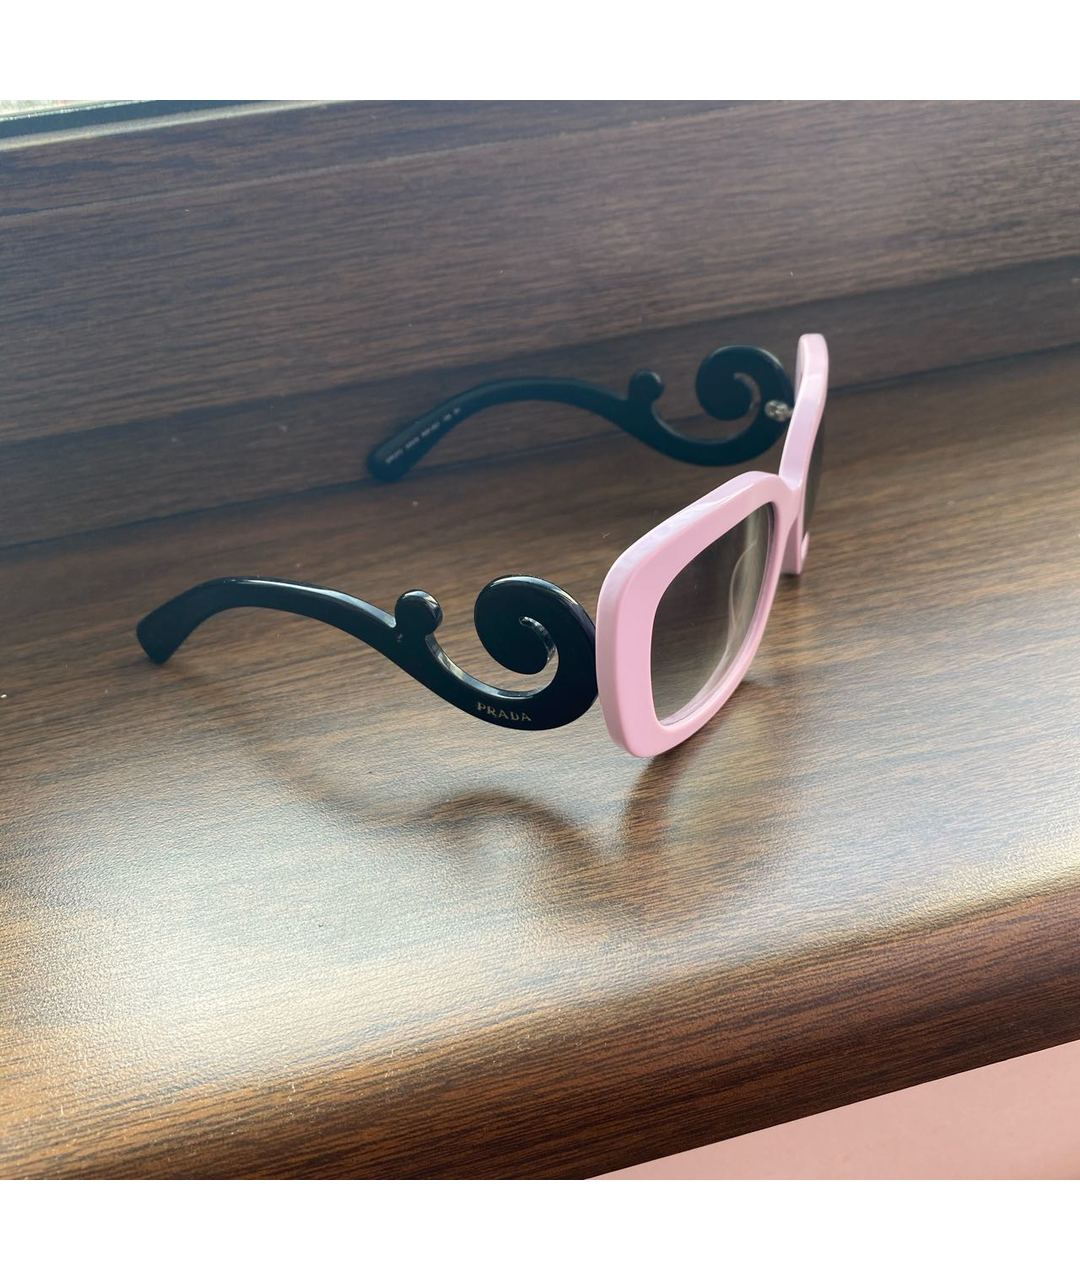 PRADA Фиолетовые пластиковые солнцезащитные очки, фото 2